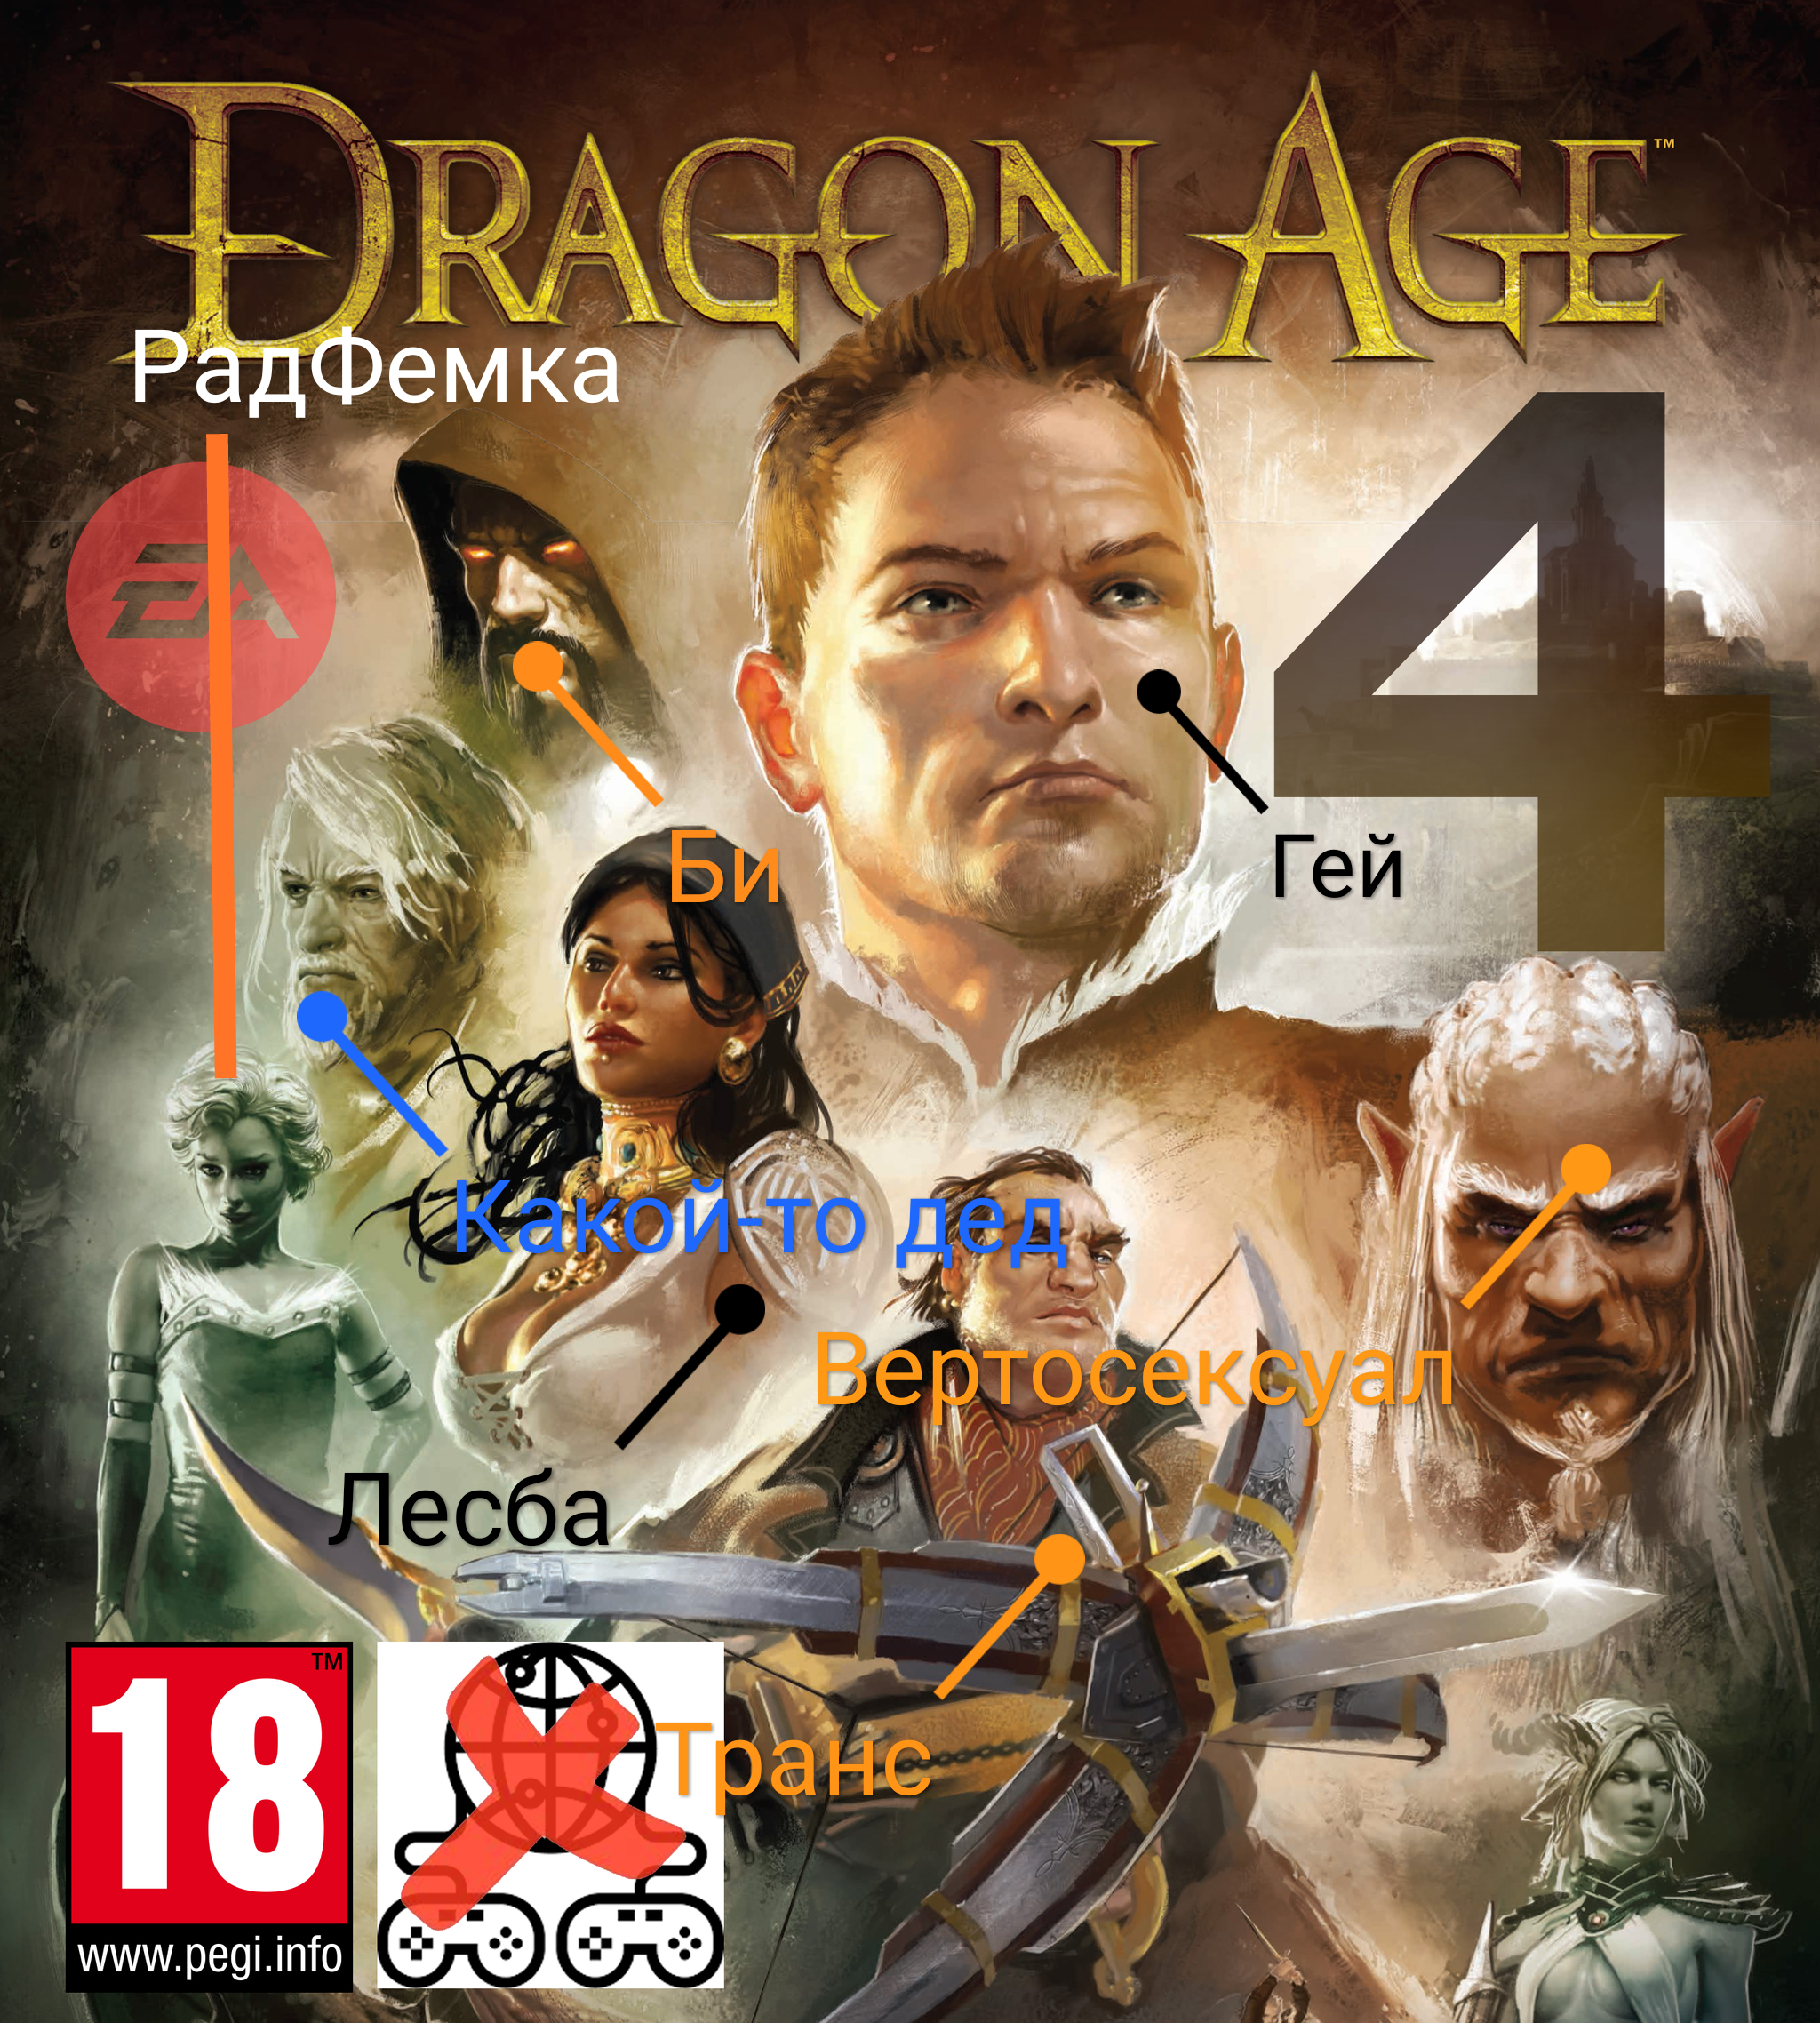 Dragon Age 4 будет строго сюжетной | Пикабу